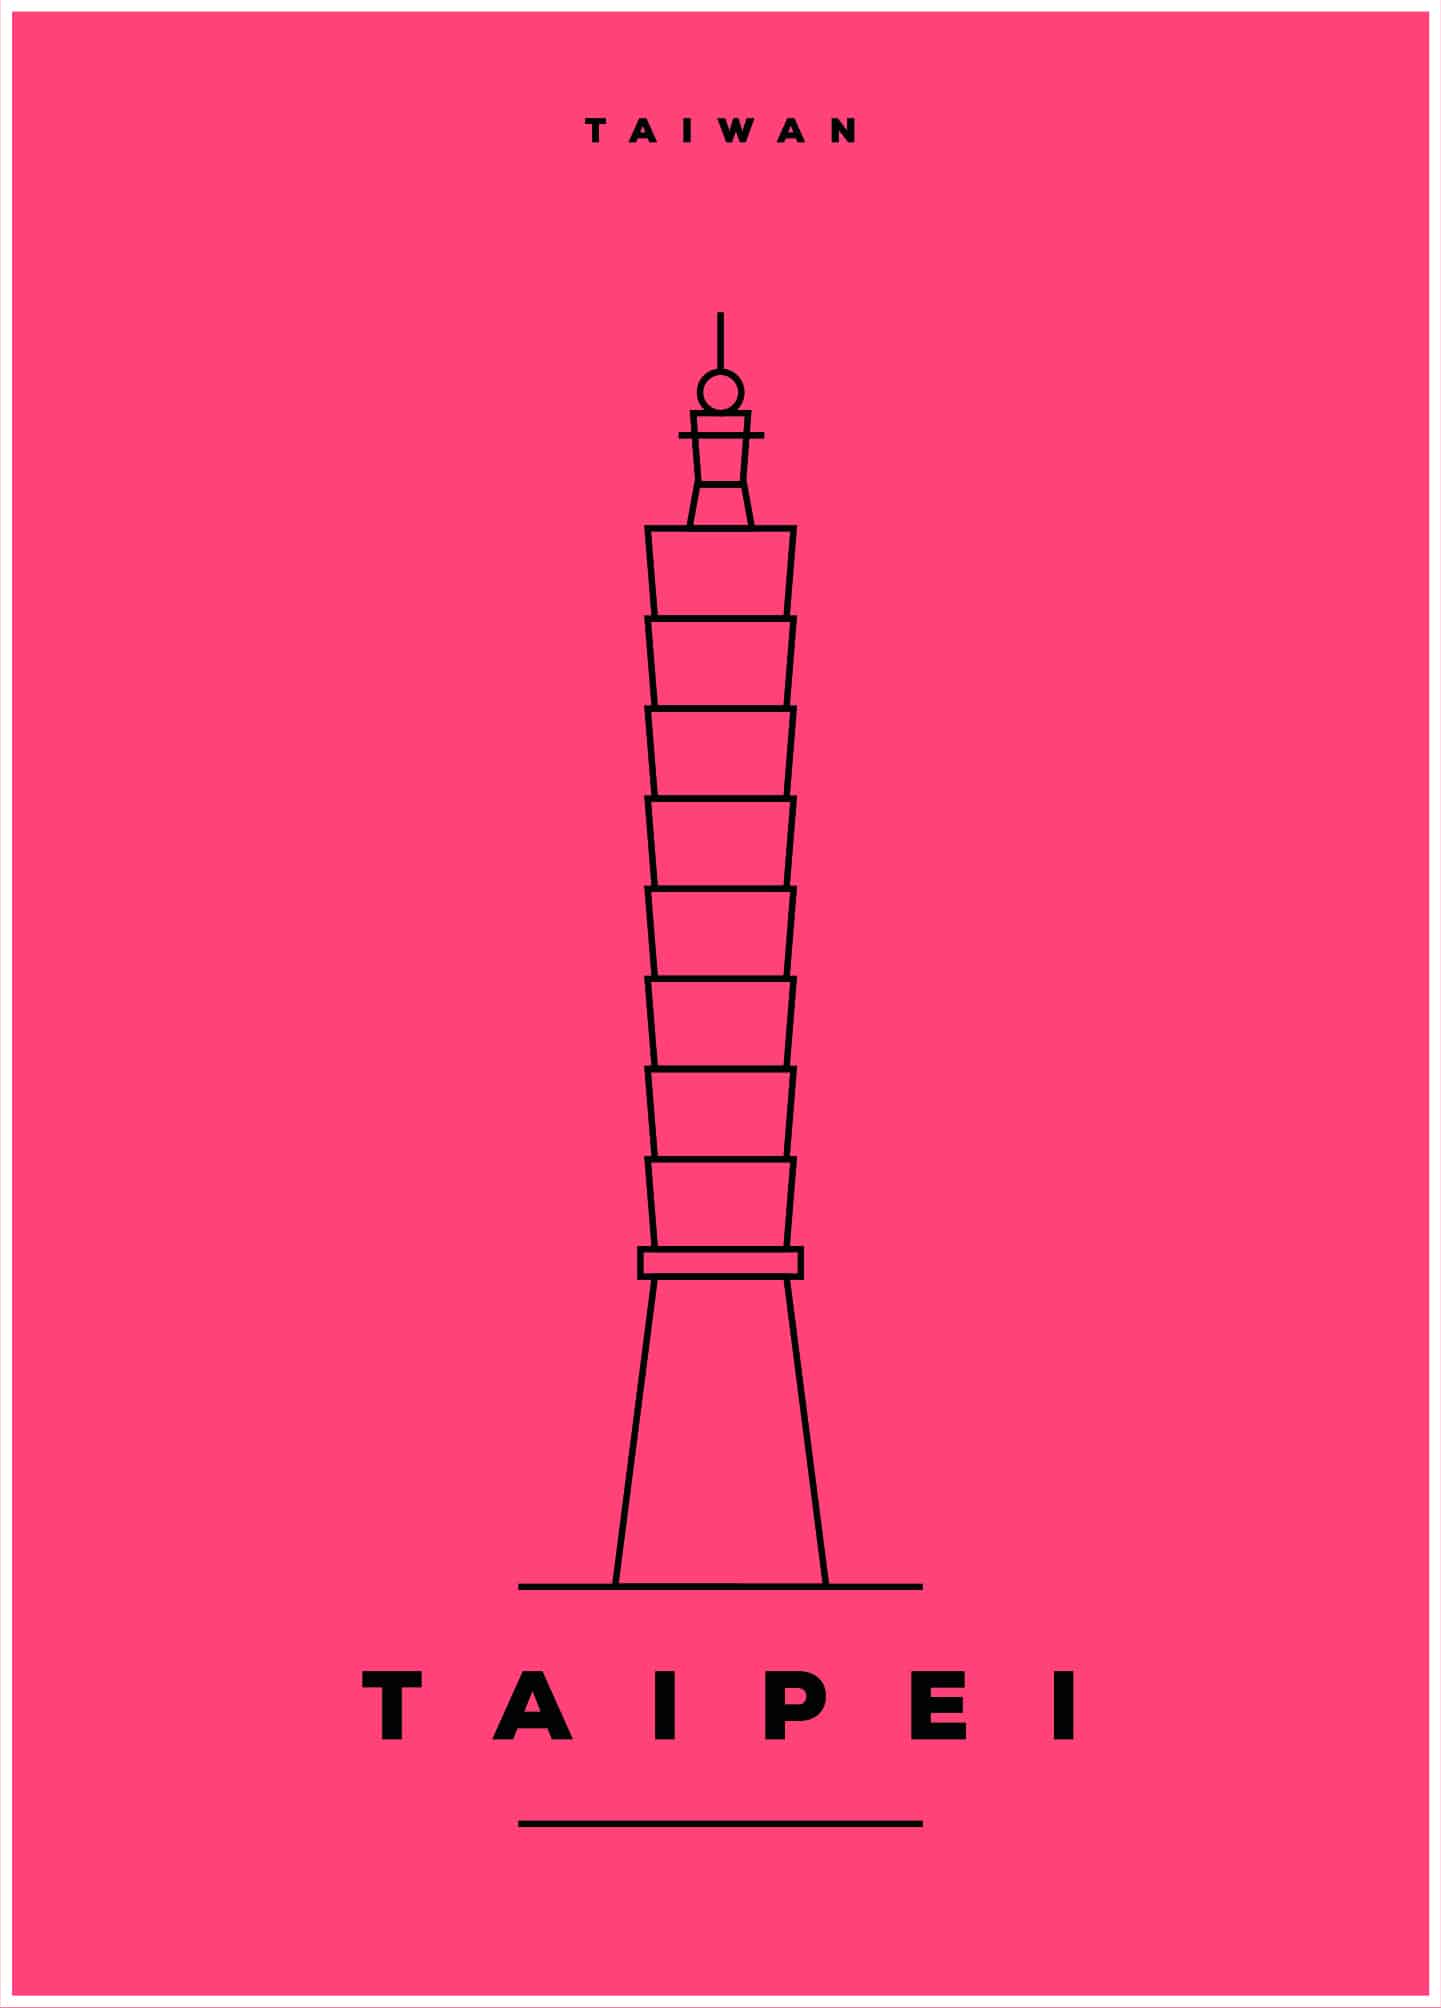 Taipei, Taiwan poster